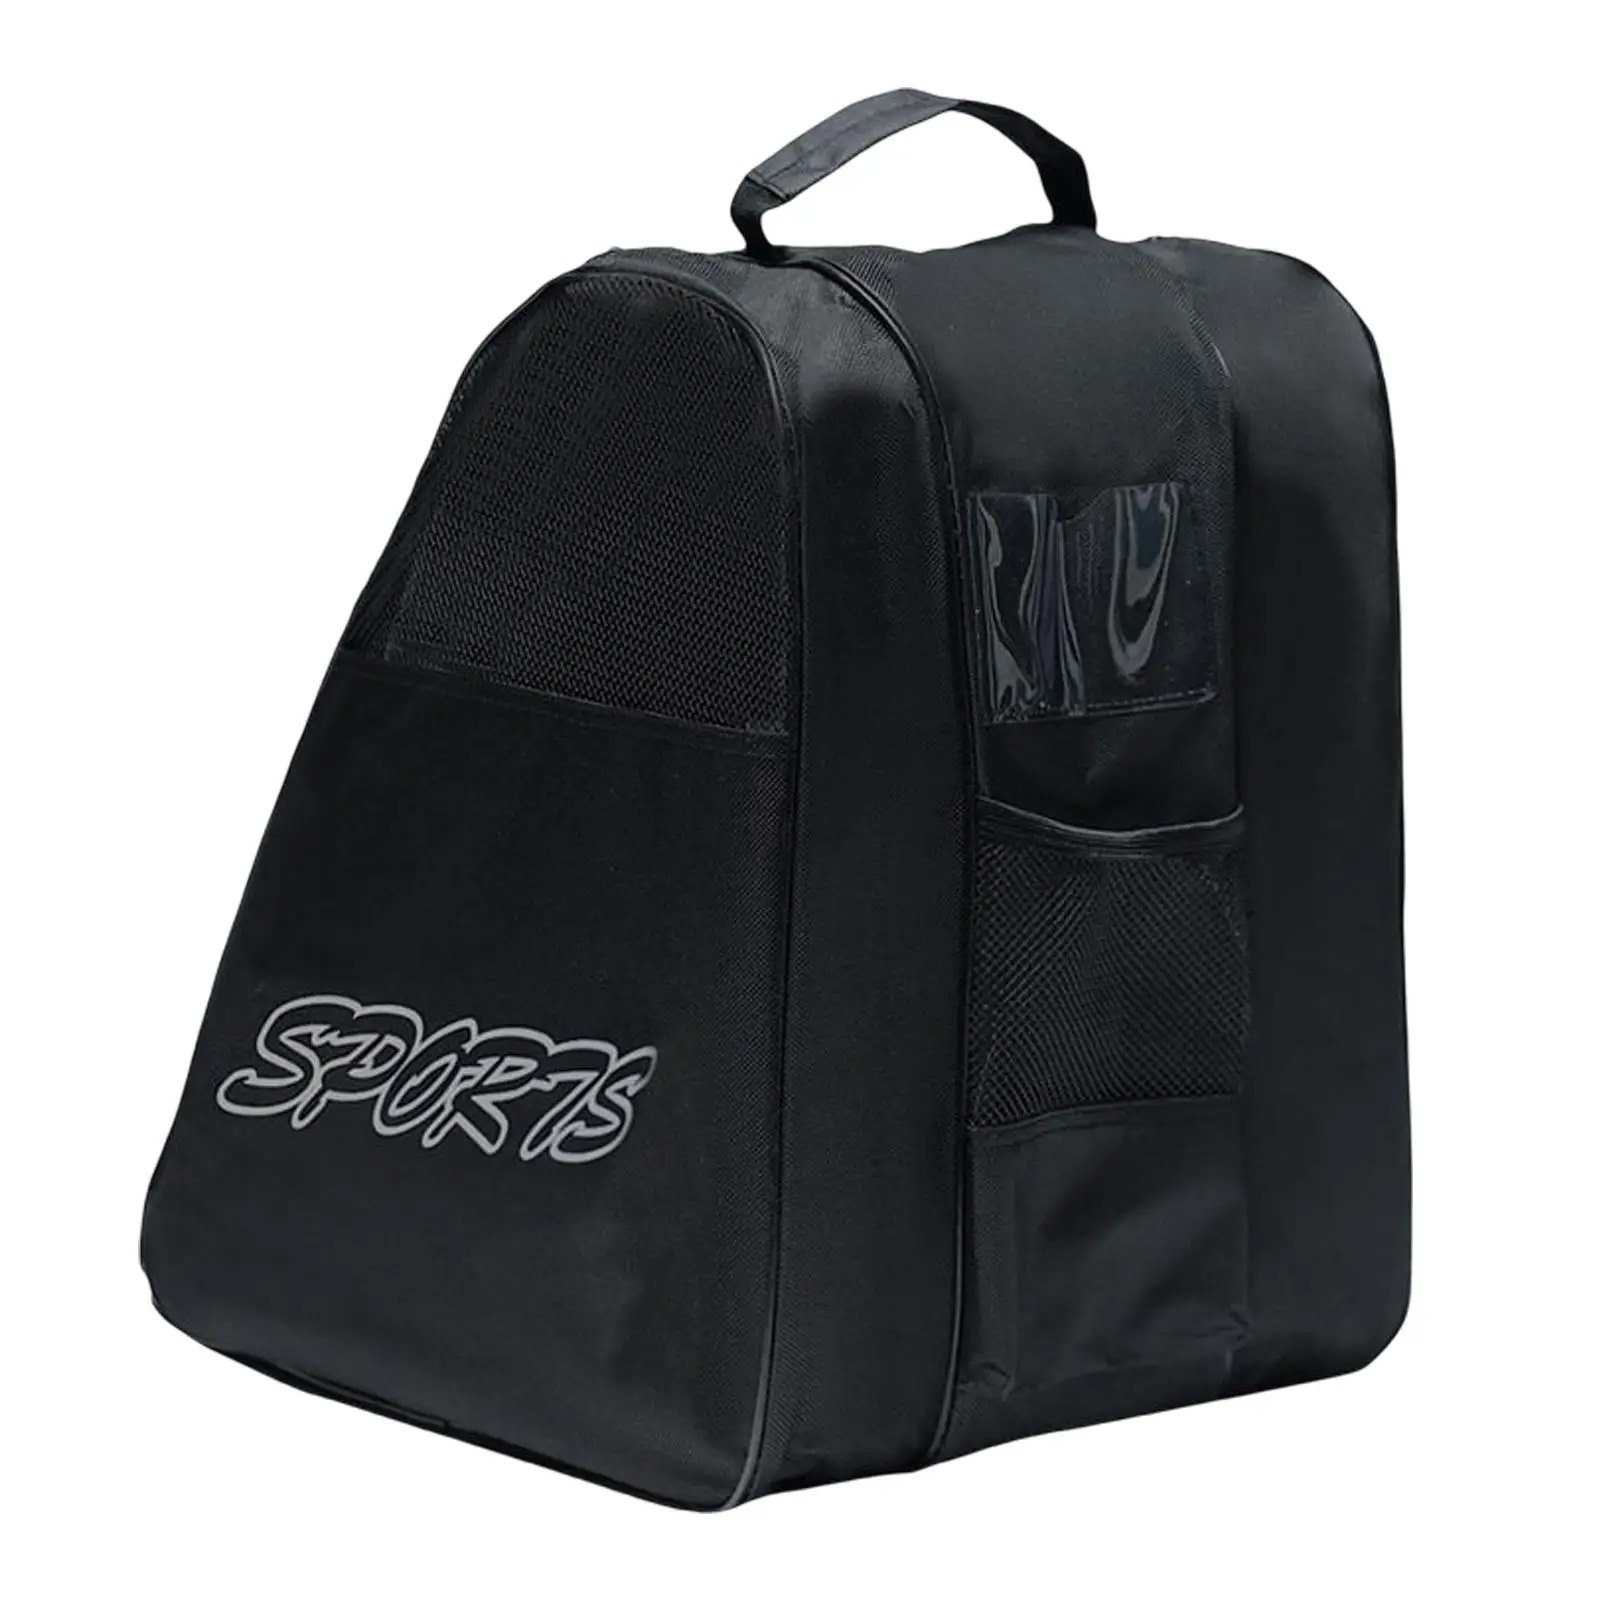 3Pcs Portable Roller Skates Bag, Ice Skating Bag, Handbags Skates Storage Bag, Adjustable Shoulder Strap Skating Shoes Bag